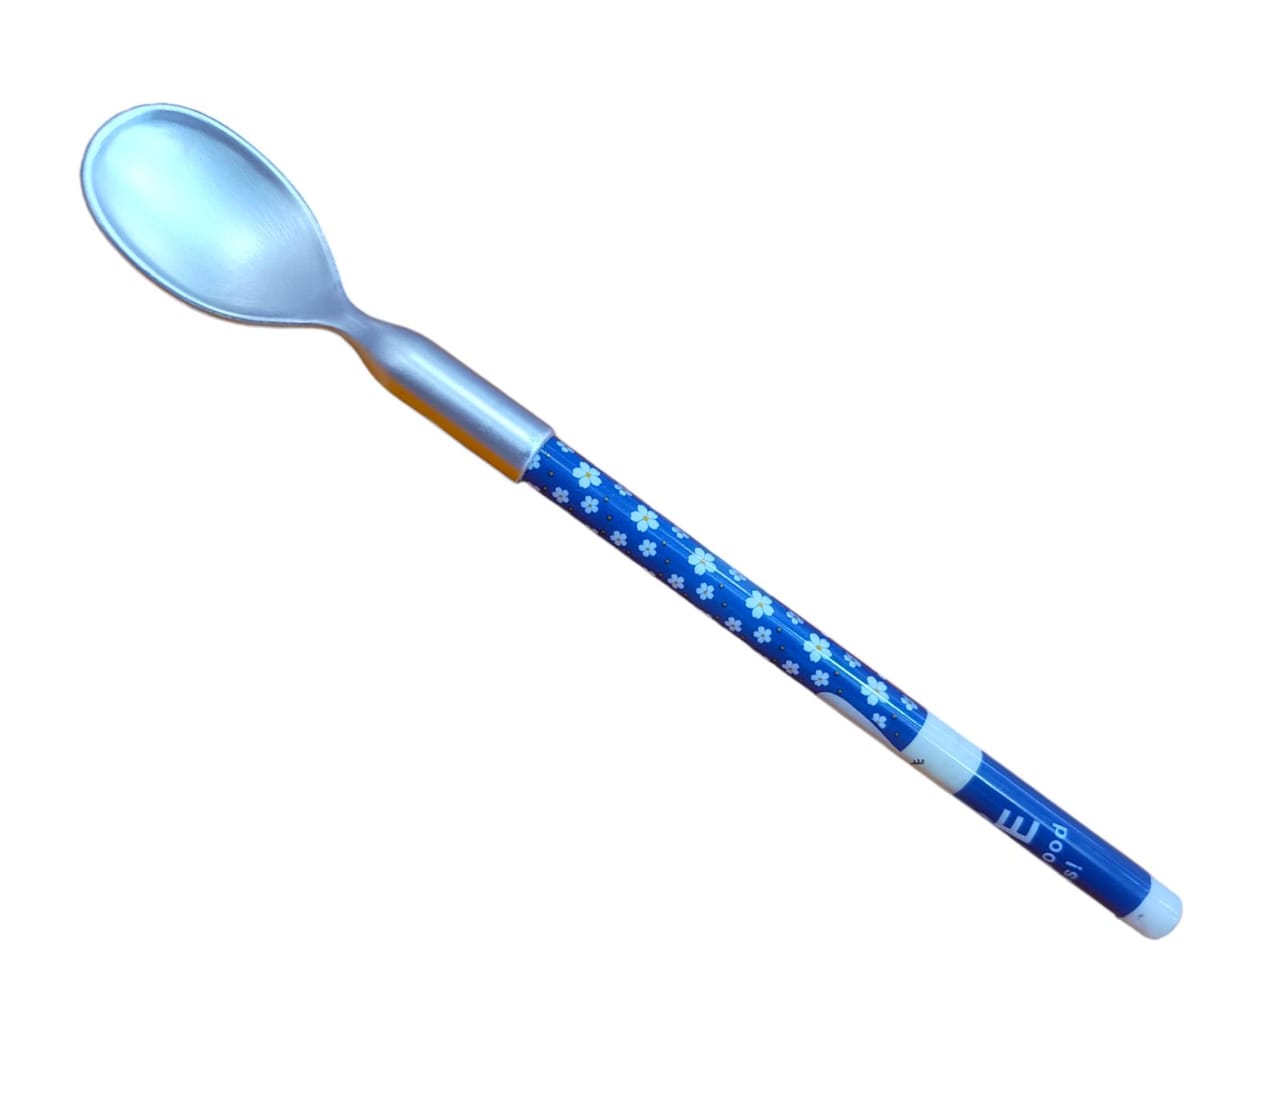 Spoon pencil